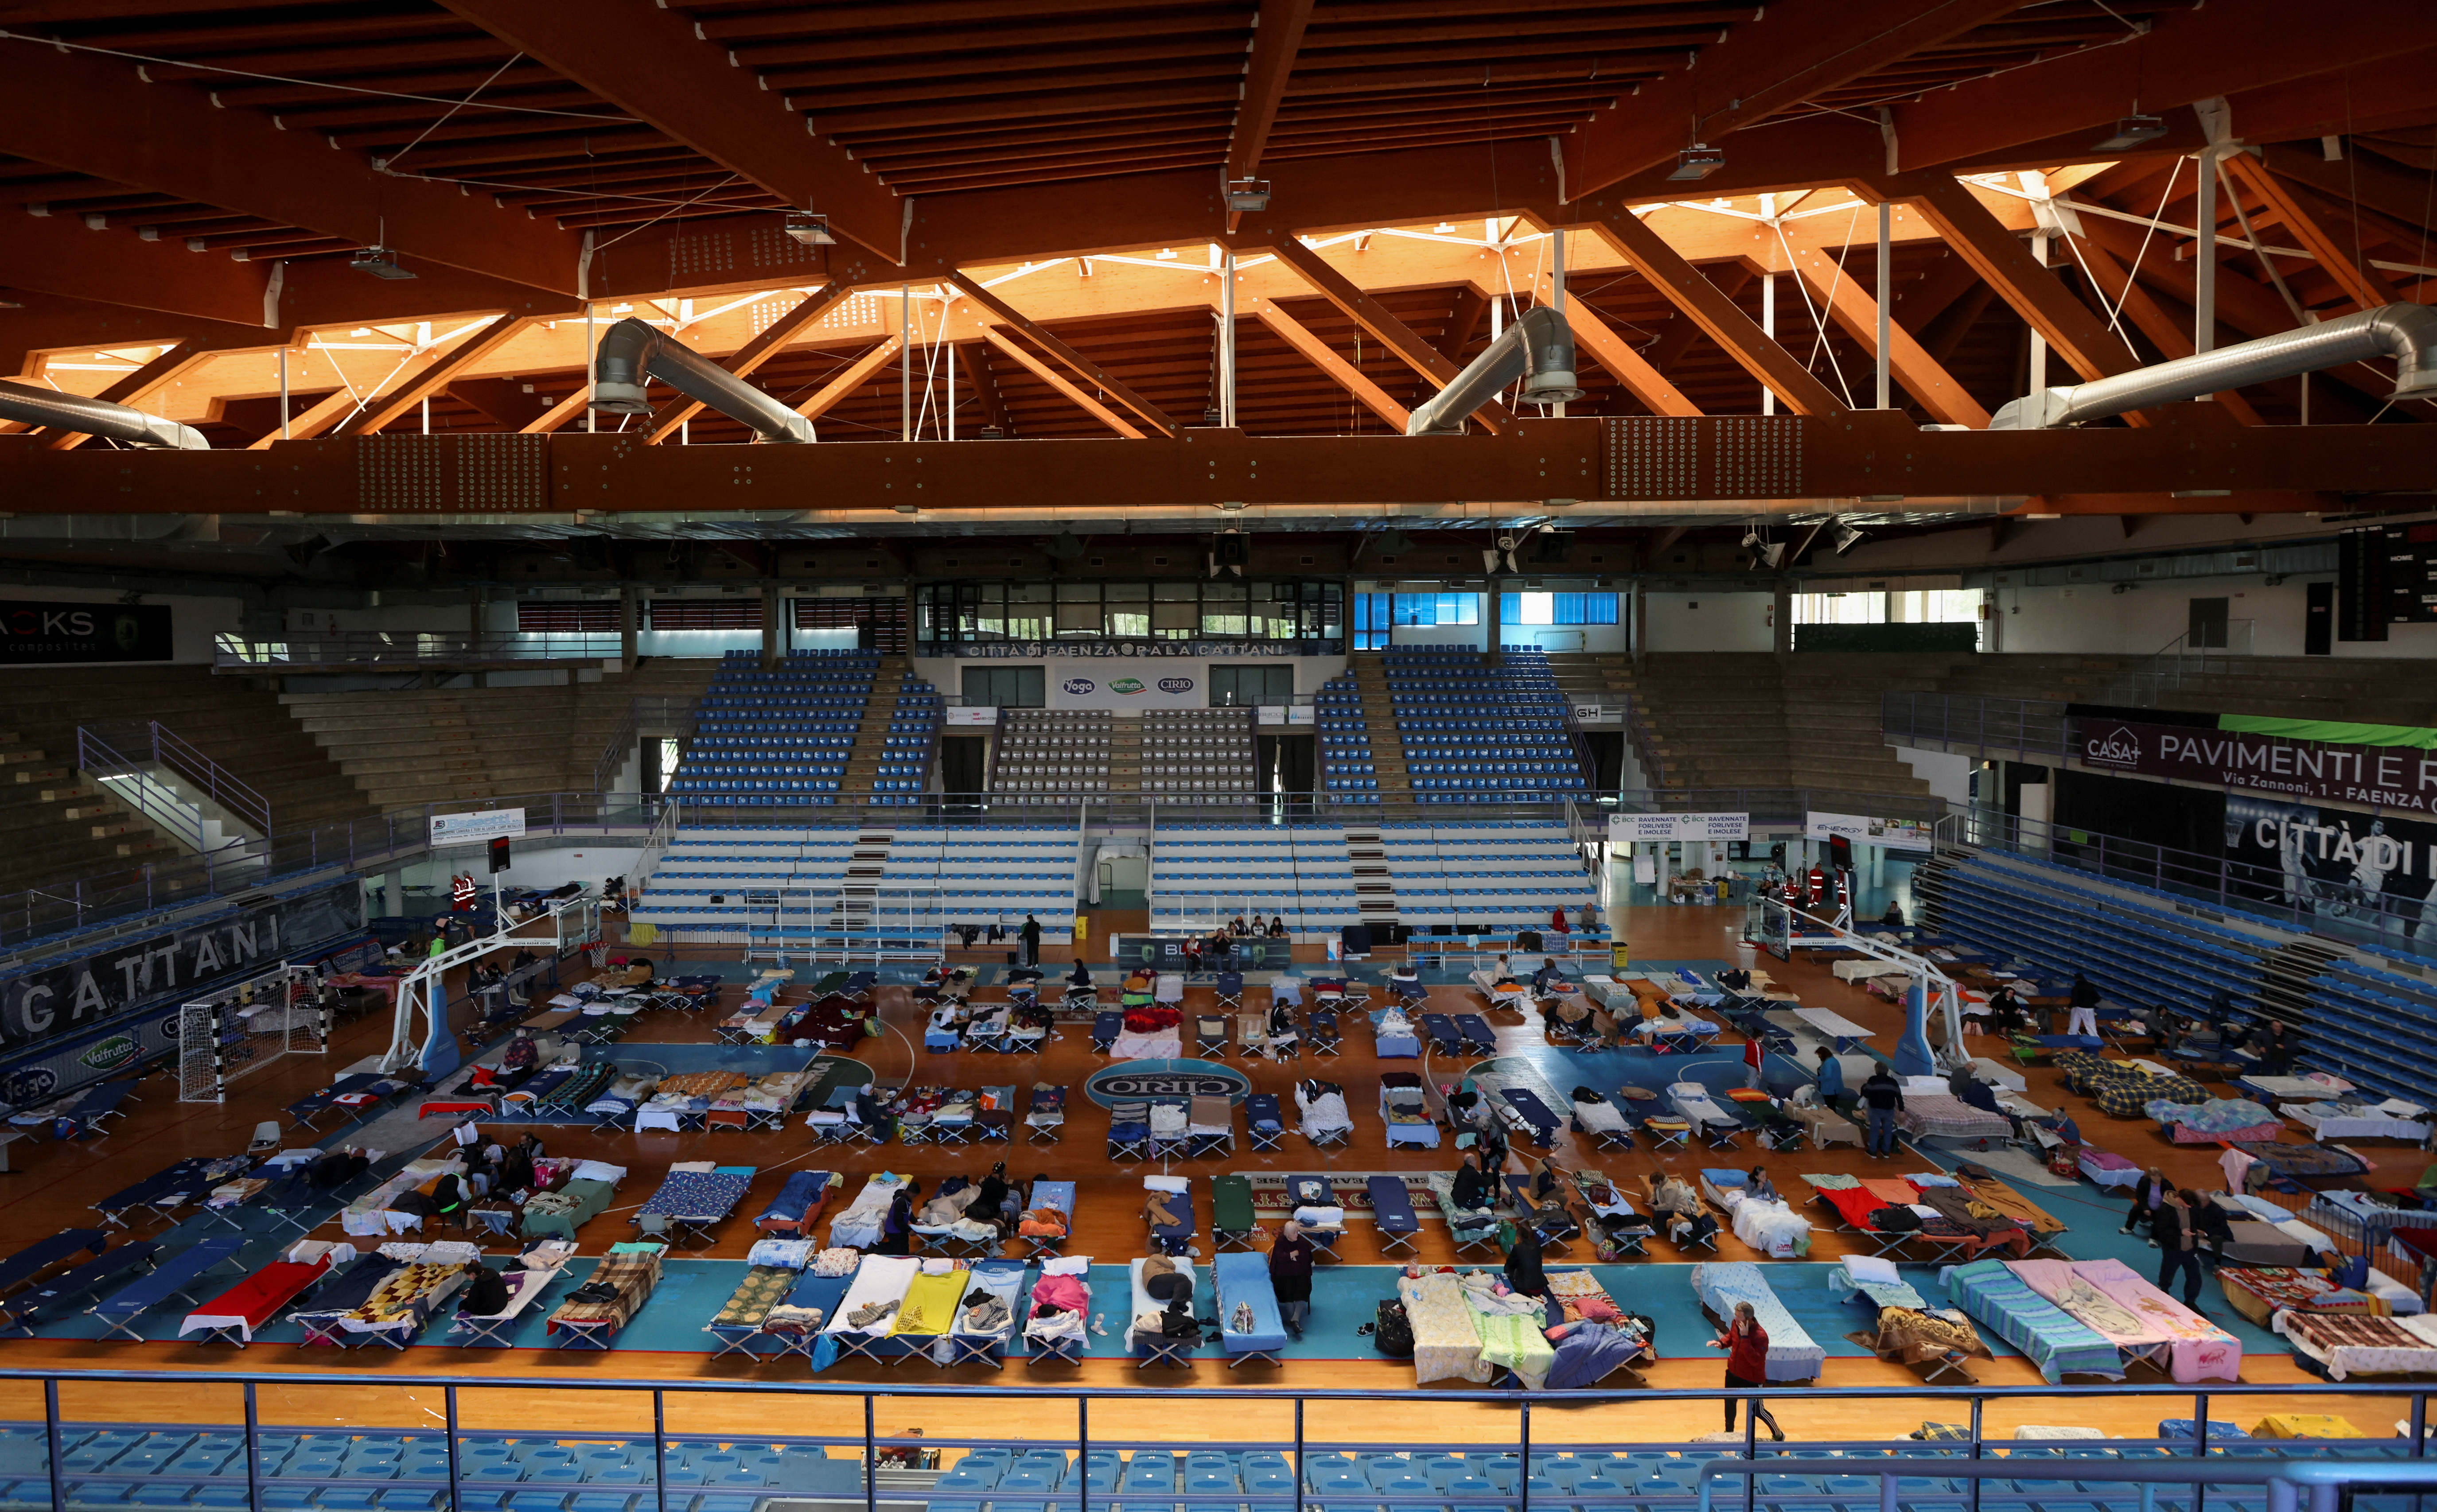 Una vista general del interior del centro deportivo PalaCattani que fue adaptado como refugio para personas desplazadas (REUTERS/Claudia Greco)